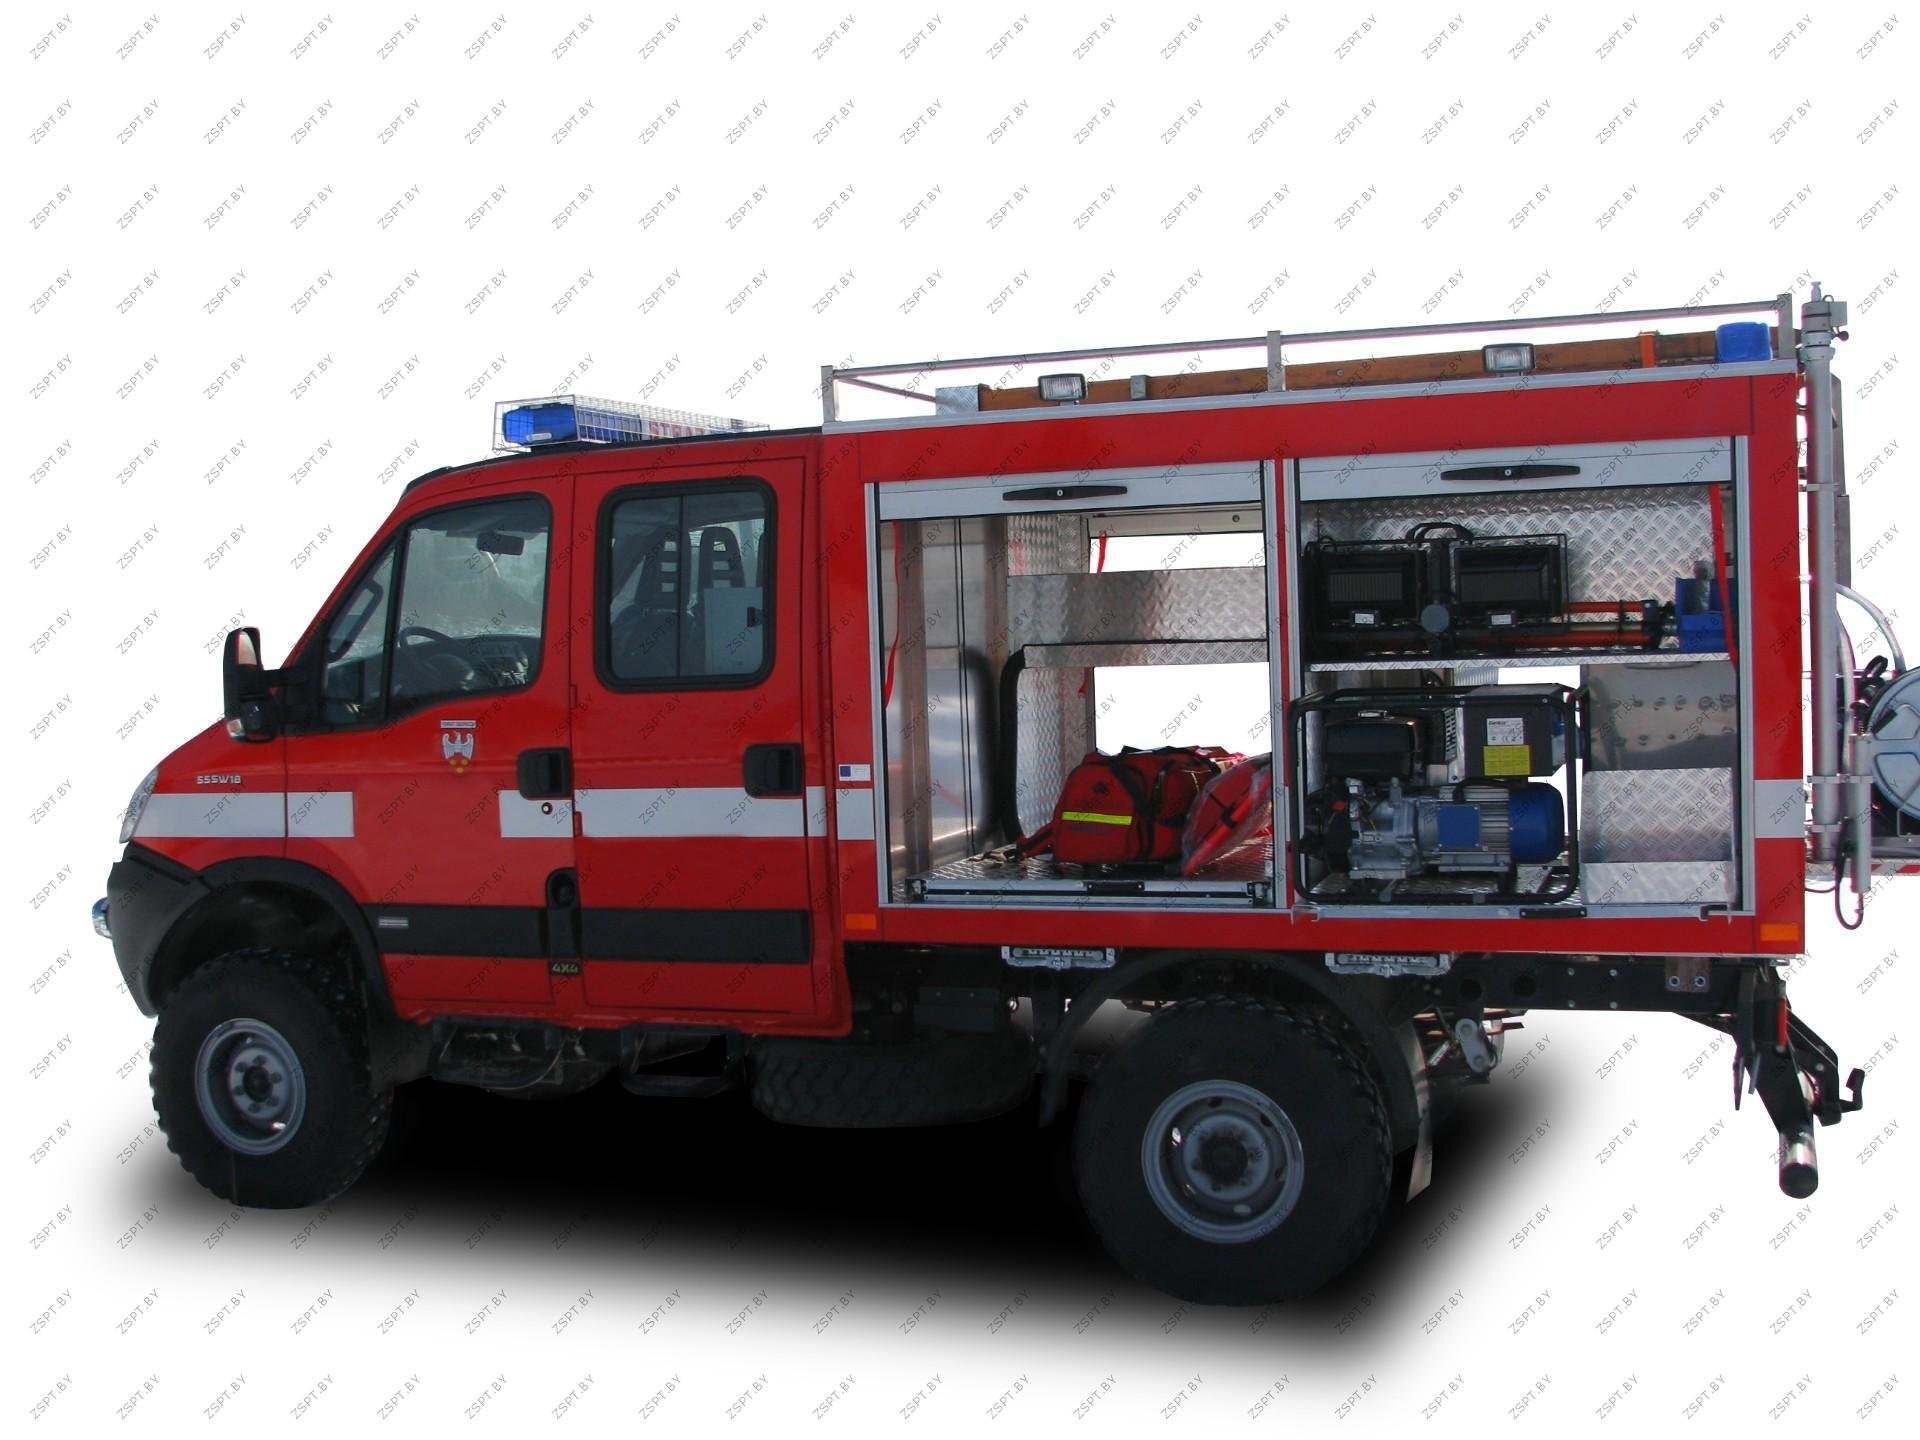 Аварийно спасательные машины. Оснащение аварийно-спасательного автомобиля Iveco ml100e18. Аварийно-спасательный автомобиль аса-20-0,8-0,6 на шасси man TGM 13.290. Аварийно-спасательный автомобиль Iveco Daily (70c15d).